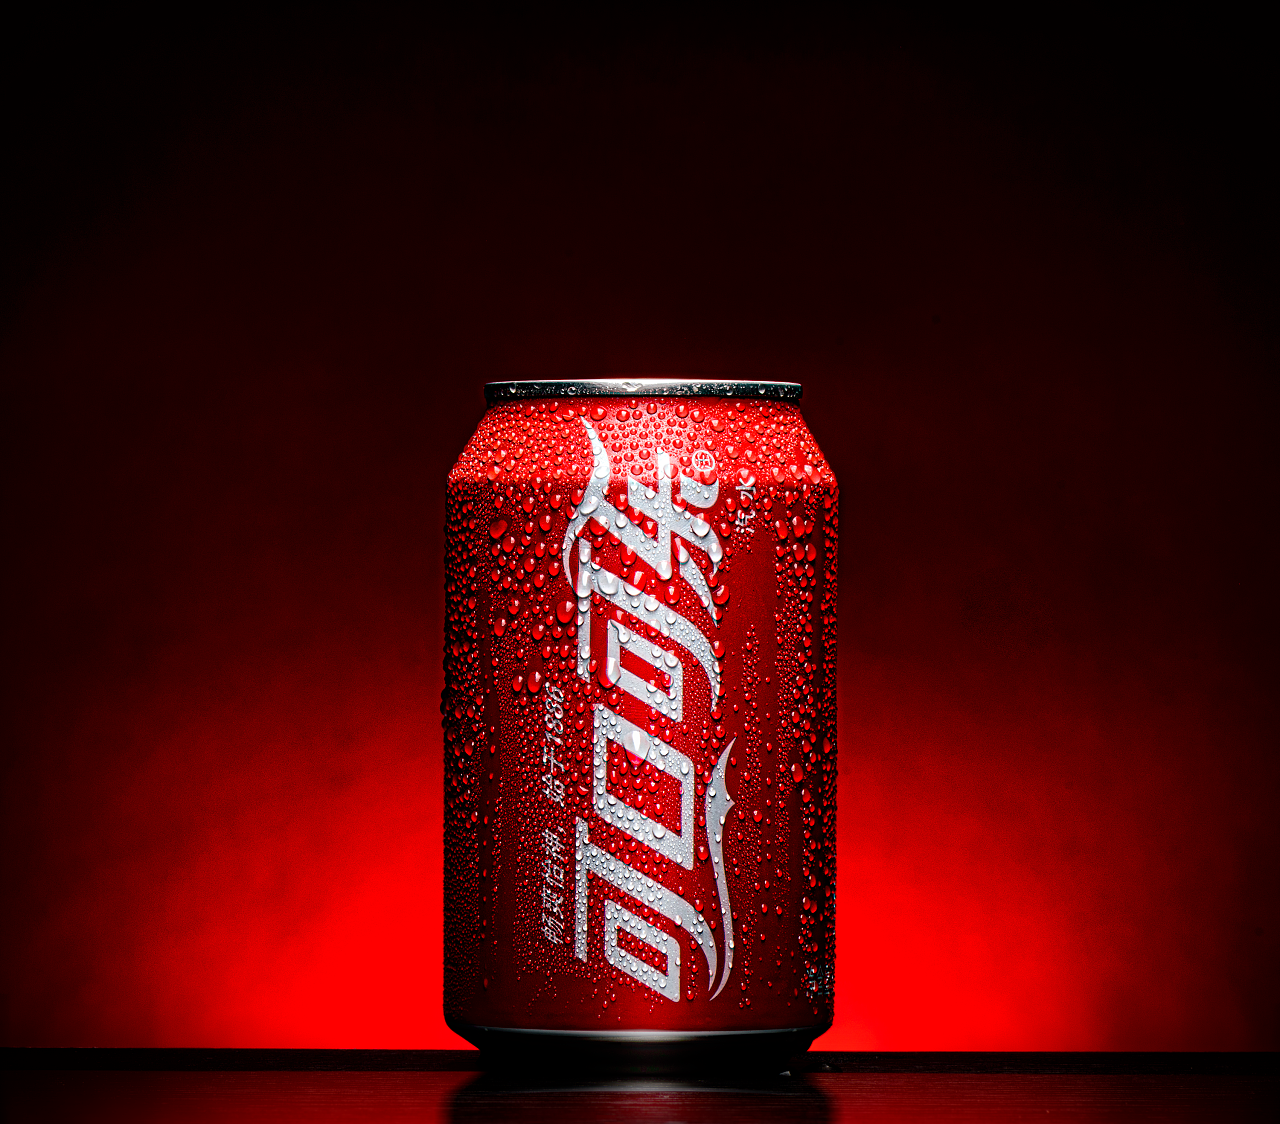 可口可乐的酷新造型 - 普象网